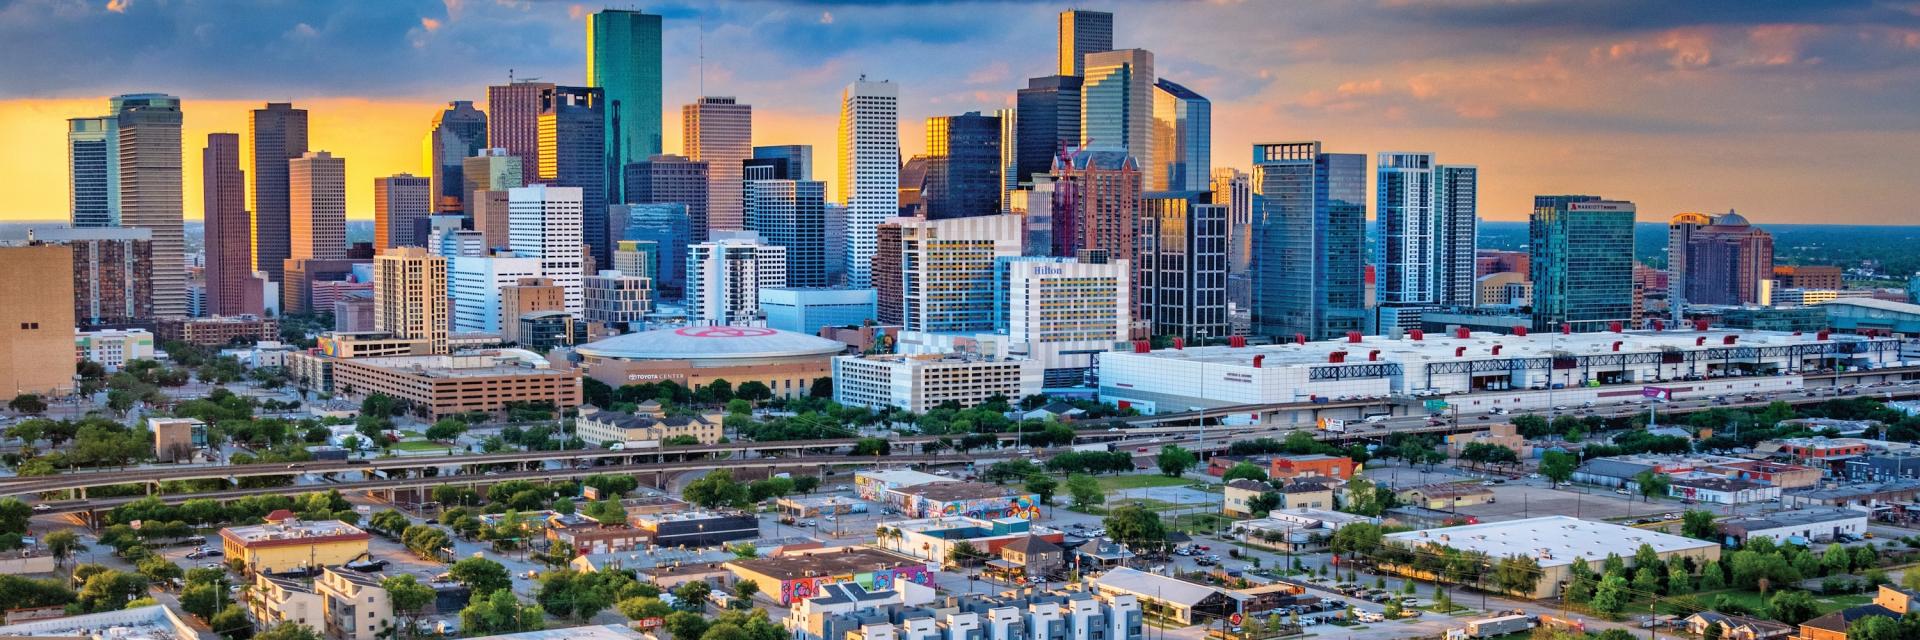 Houston_Texas_Downtown